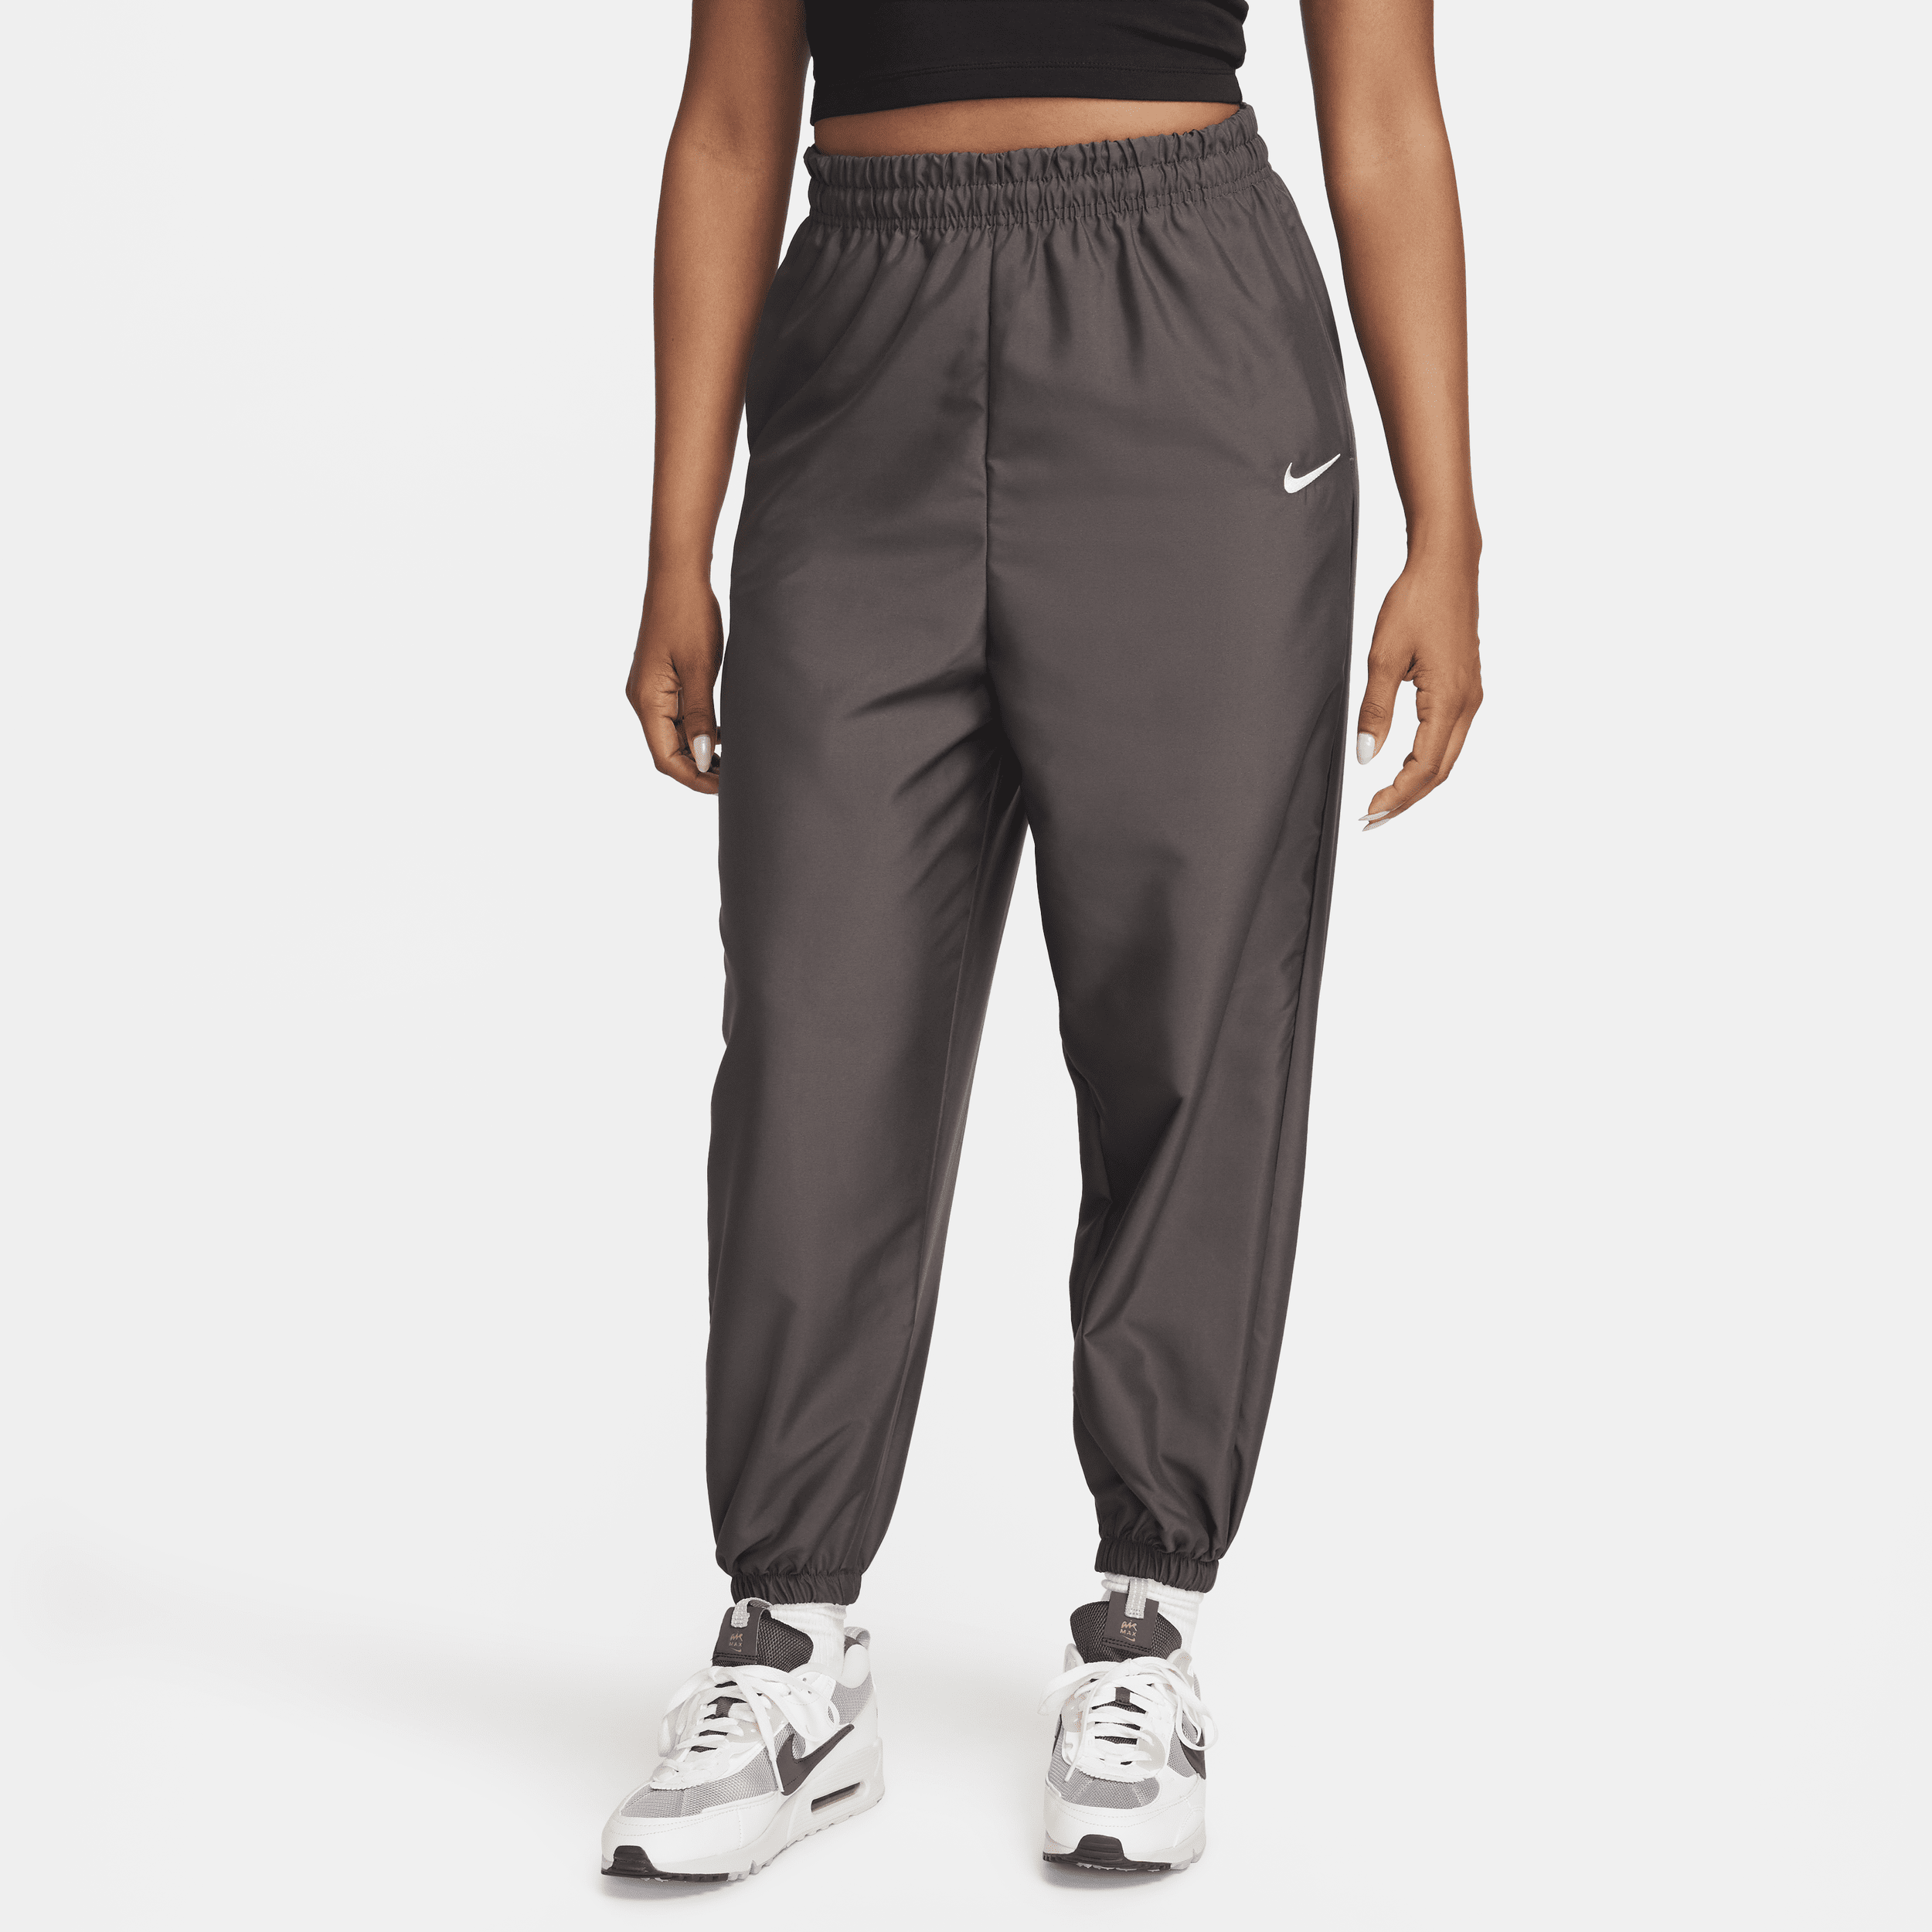 Nike Sportswear geweven joggingbroek voor dames Bruin